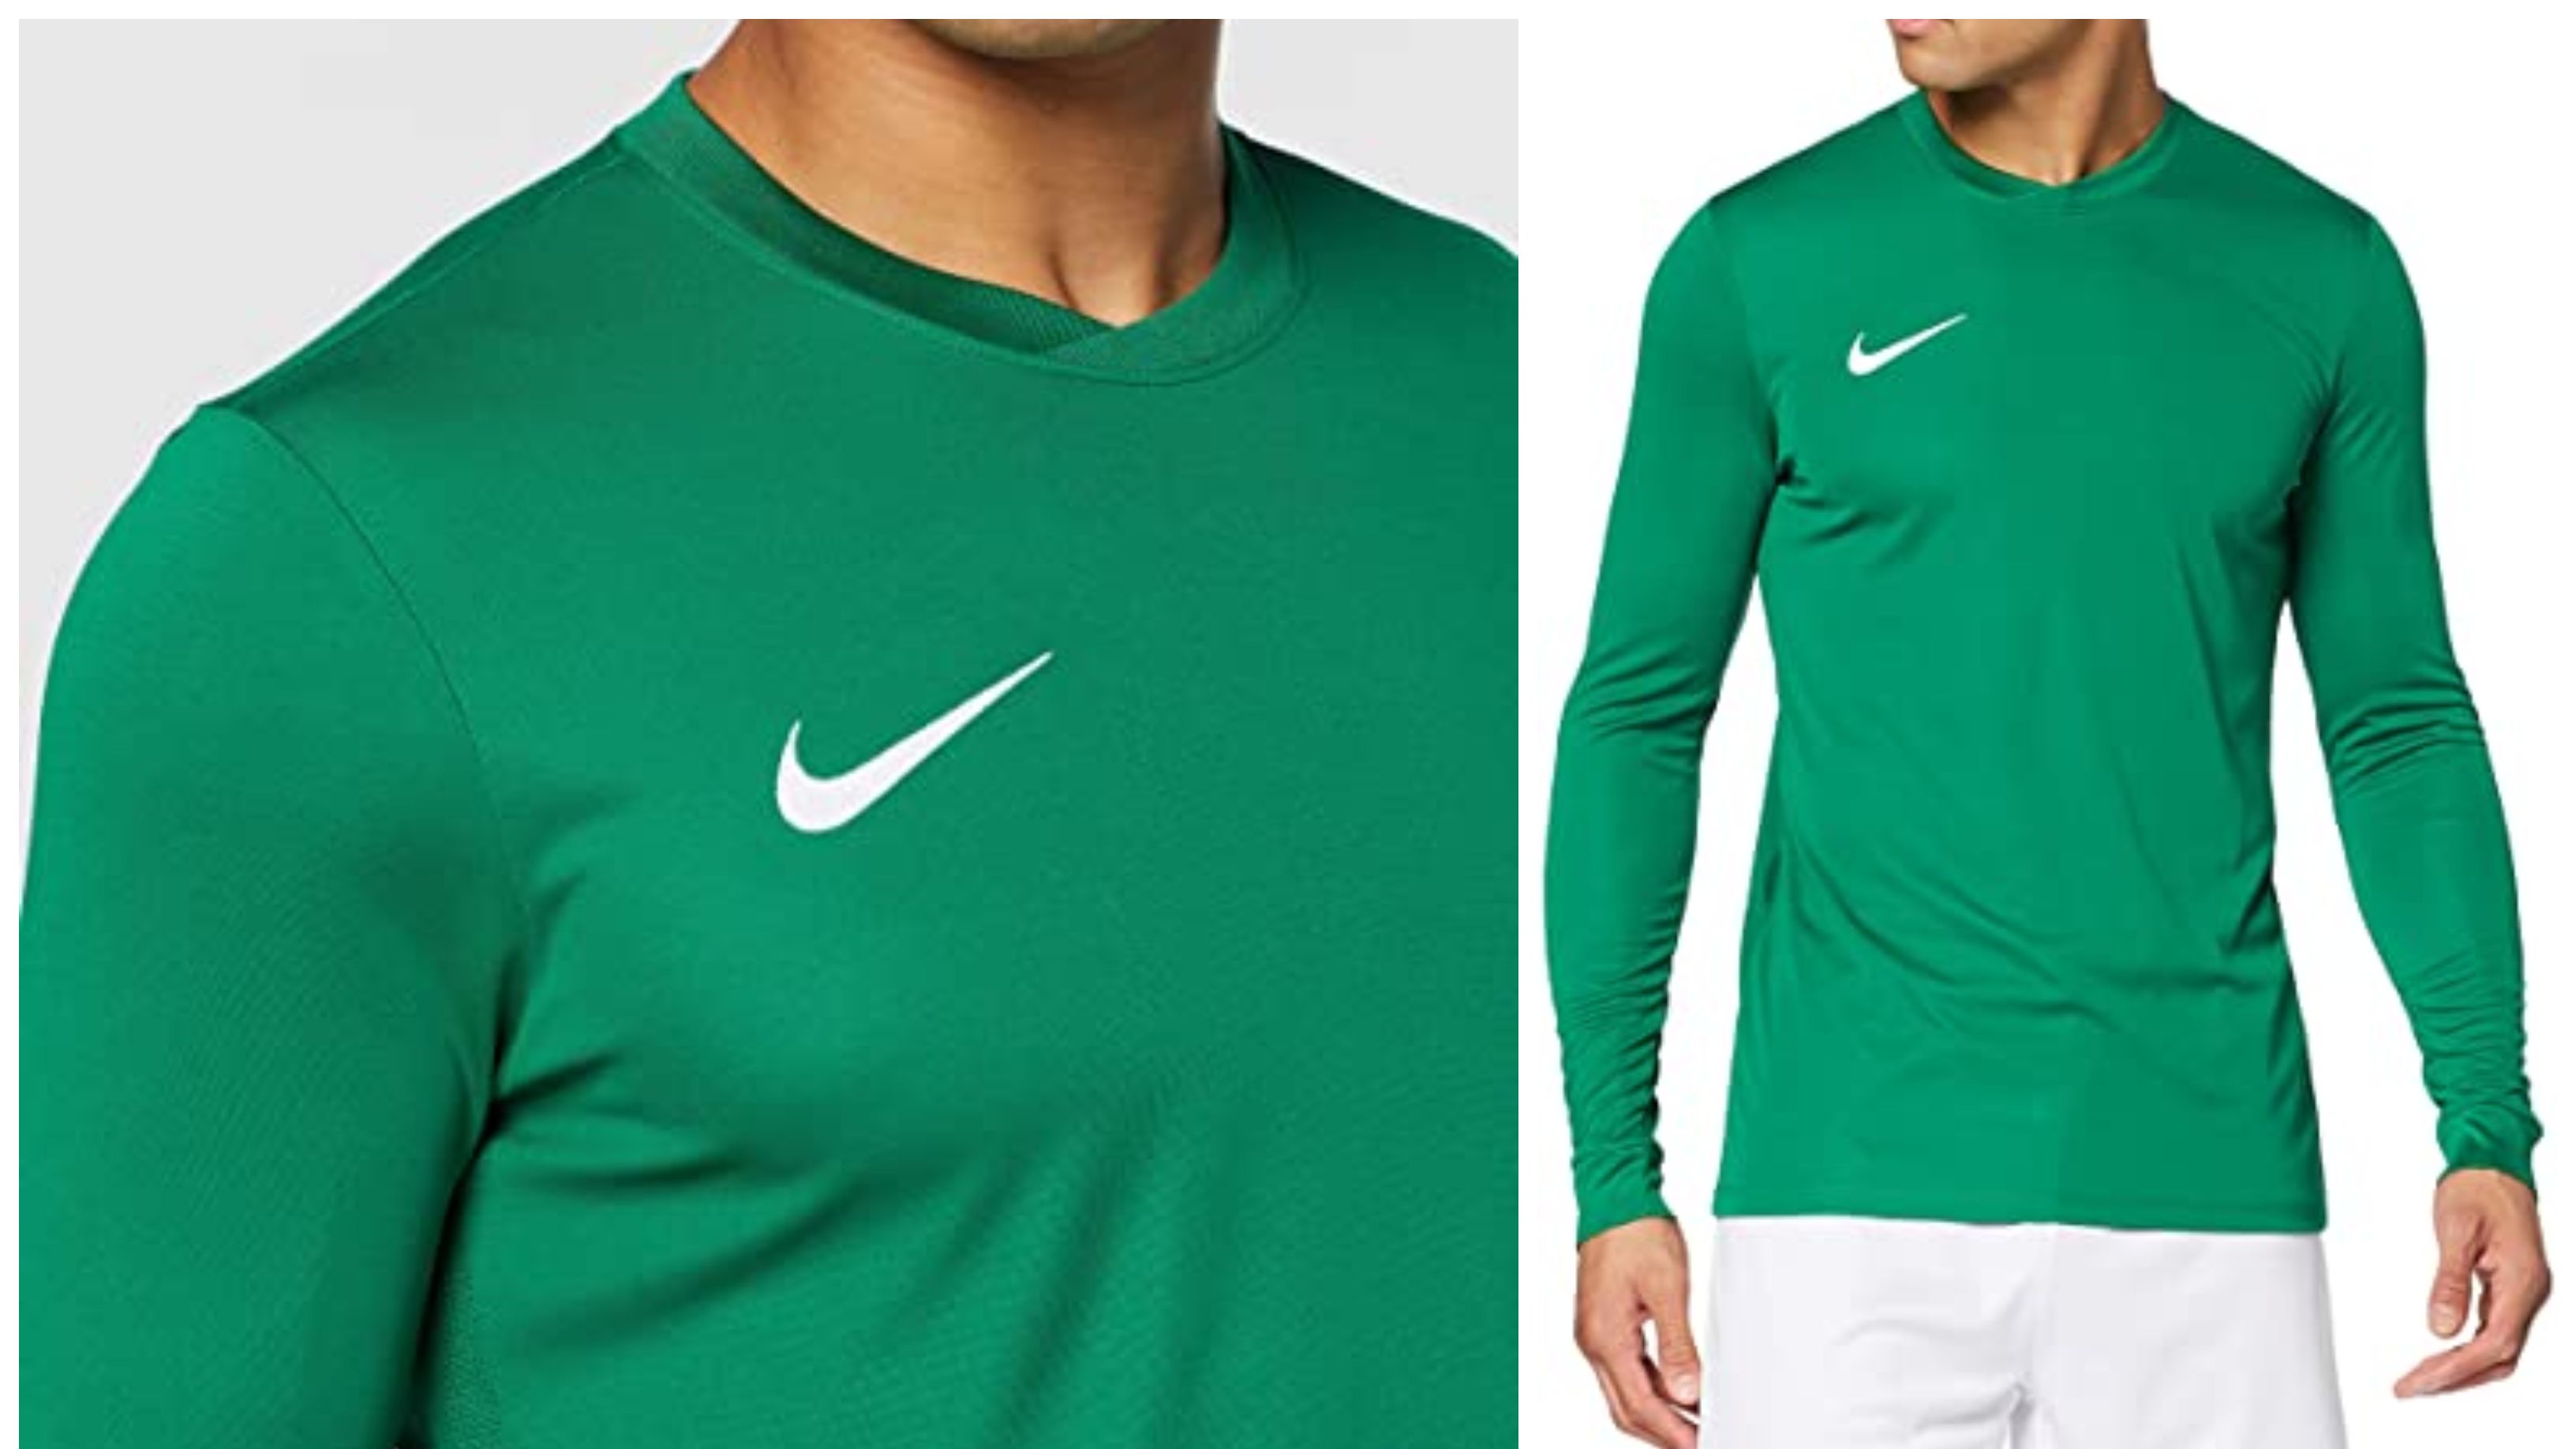 Nike triunfa con esta camiseta de manga larga de